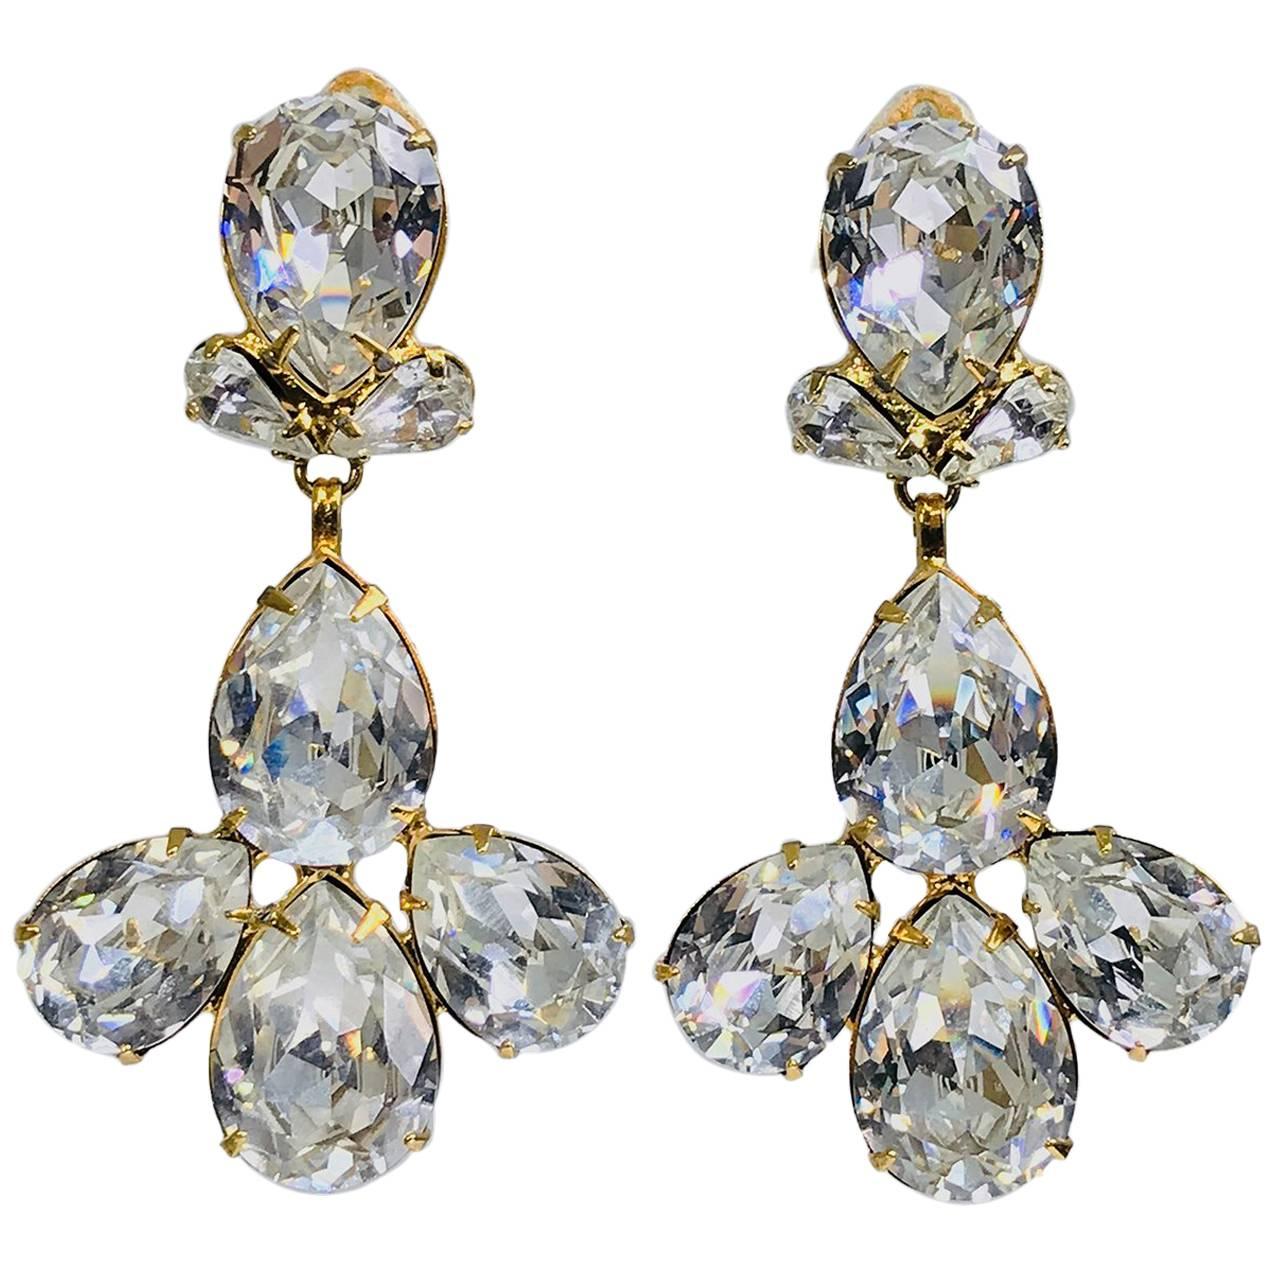 Siman Tu large icy crystal dangle earrings